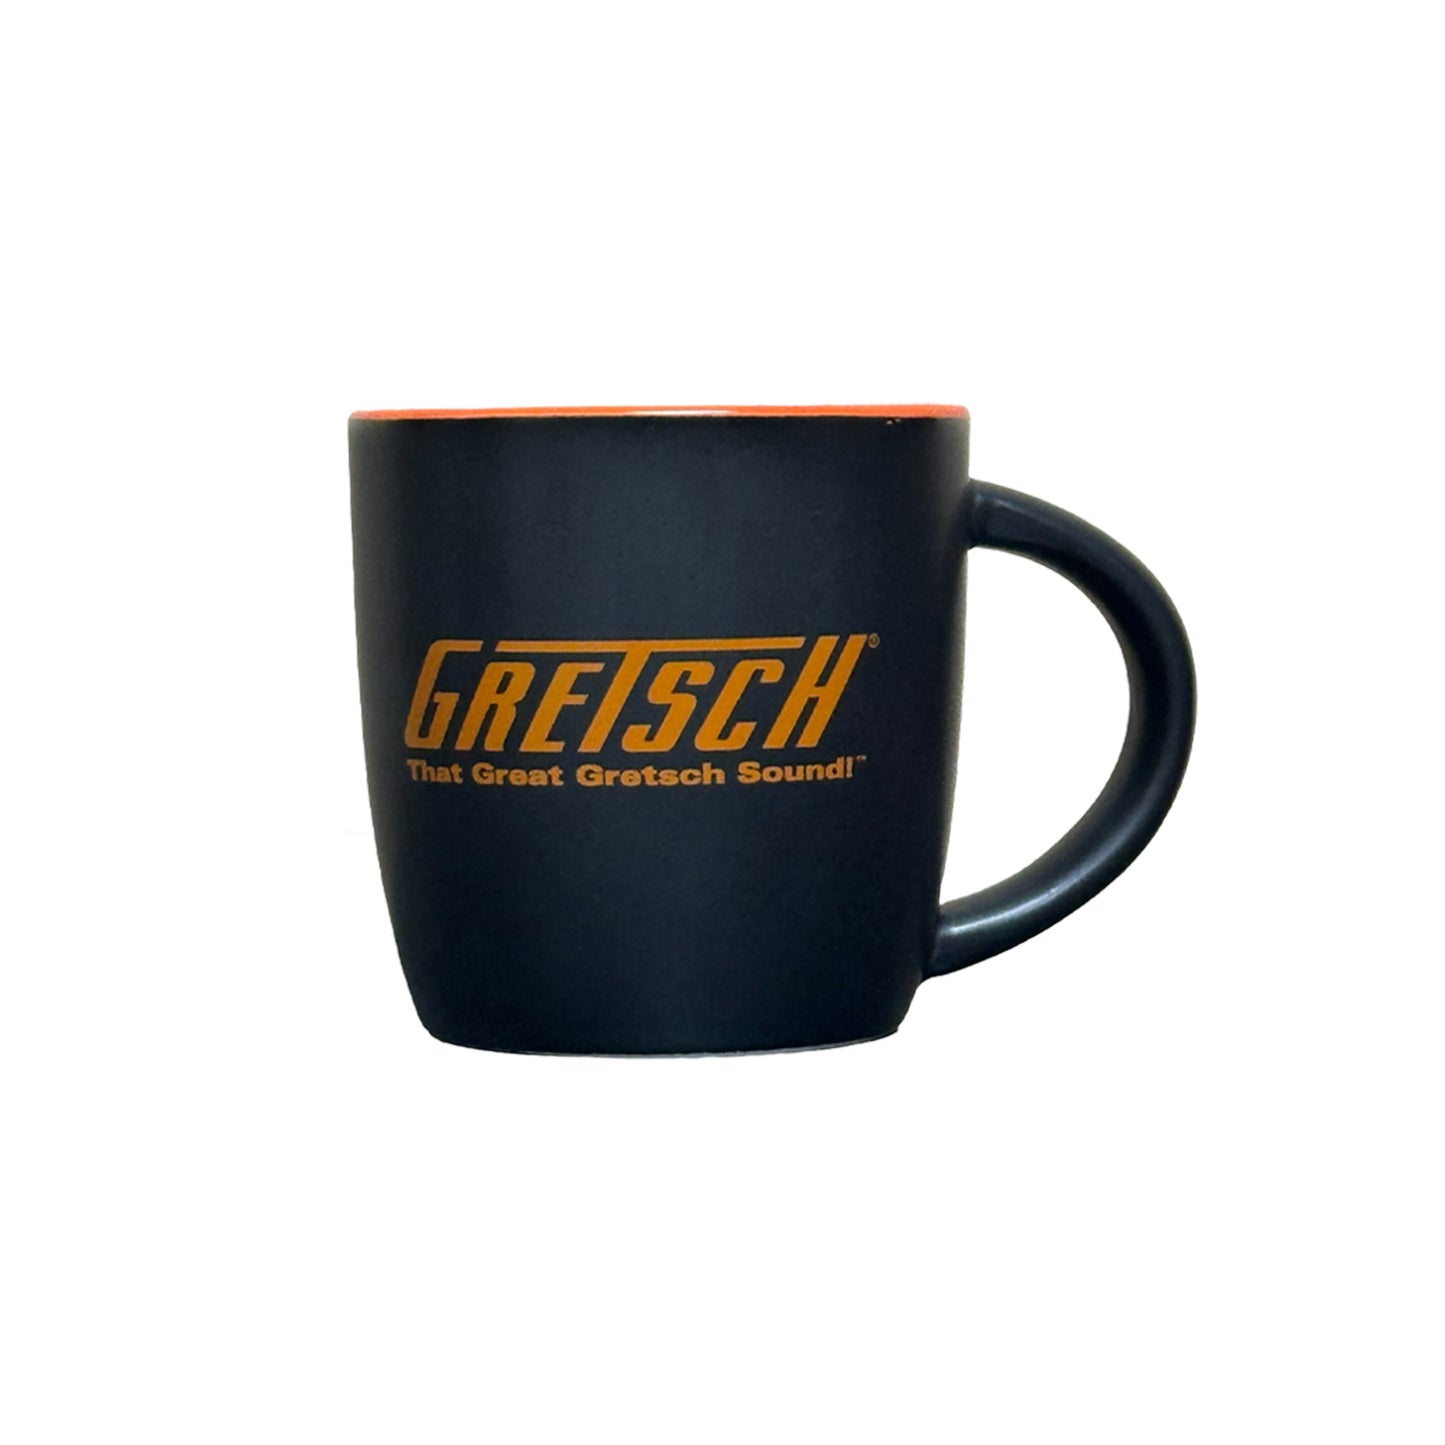 "That Great Gretsch Sound" 12oz Coffee Mug